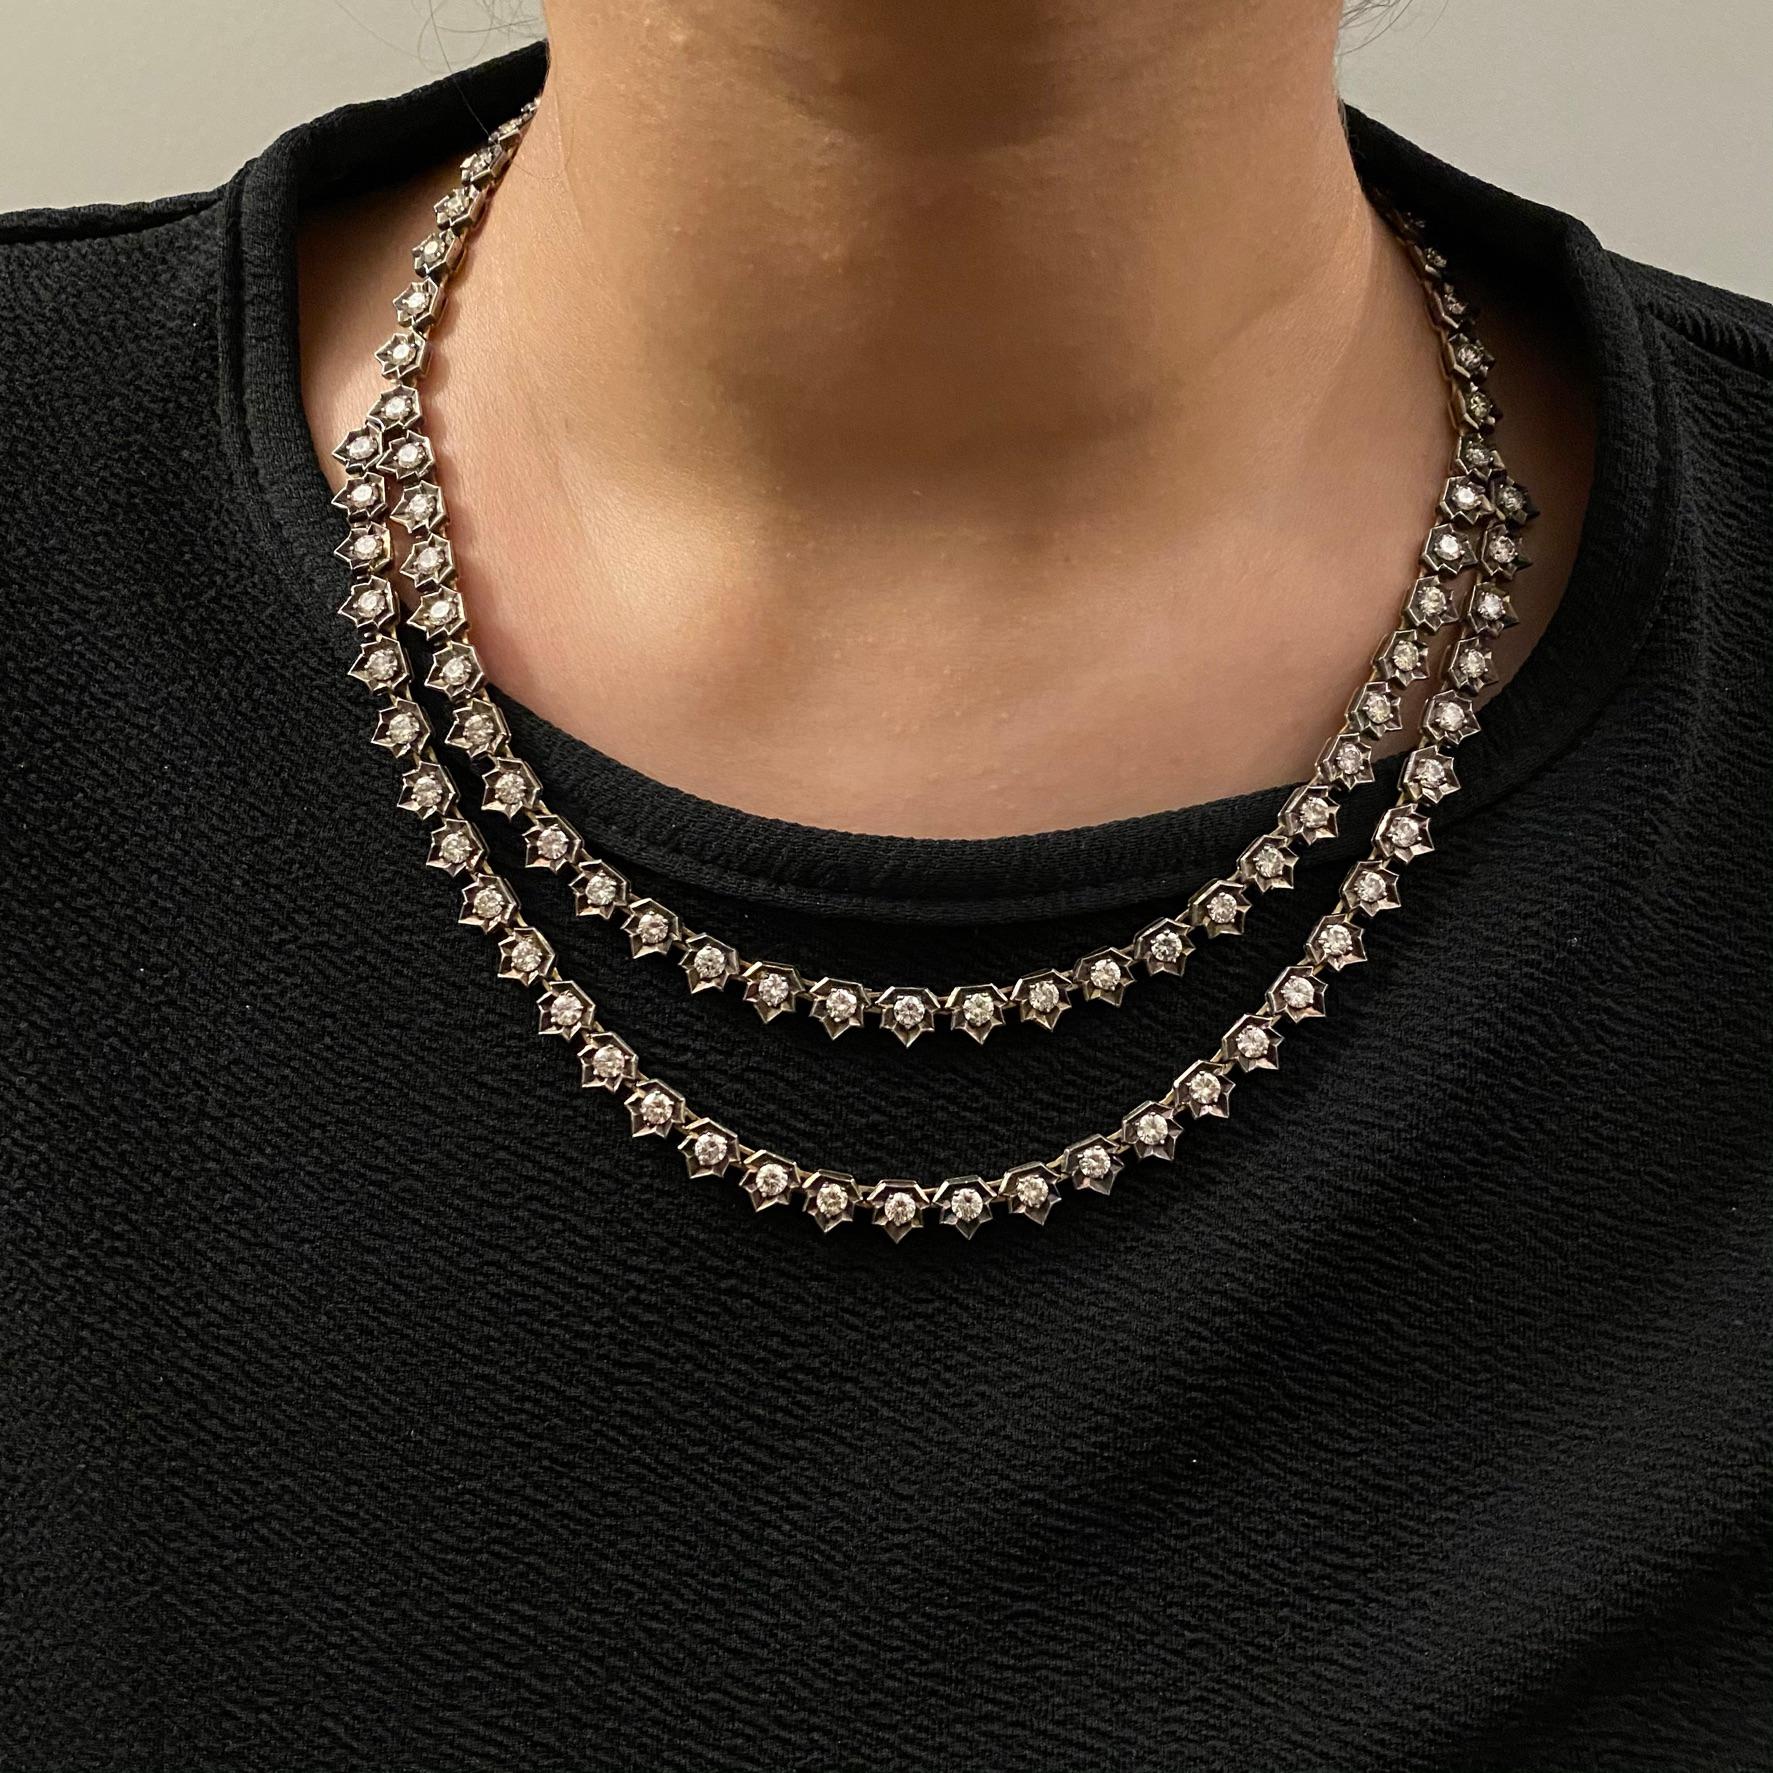 Wir stellen Ihnen unsere Antik-Diamant-Halskette vor, ein zeitloses und elegantes Stück, das Sie in eine vergangene Ära der Opulenz und des Glamours entführt. Diese exquisite Halskette besticht durch 20 Karat Diamanten, die sorgfältig in eine